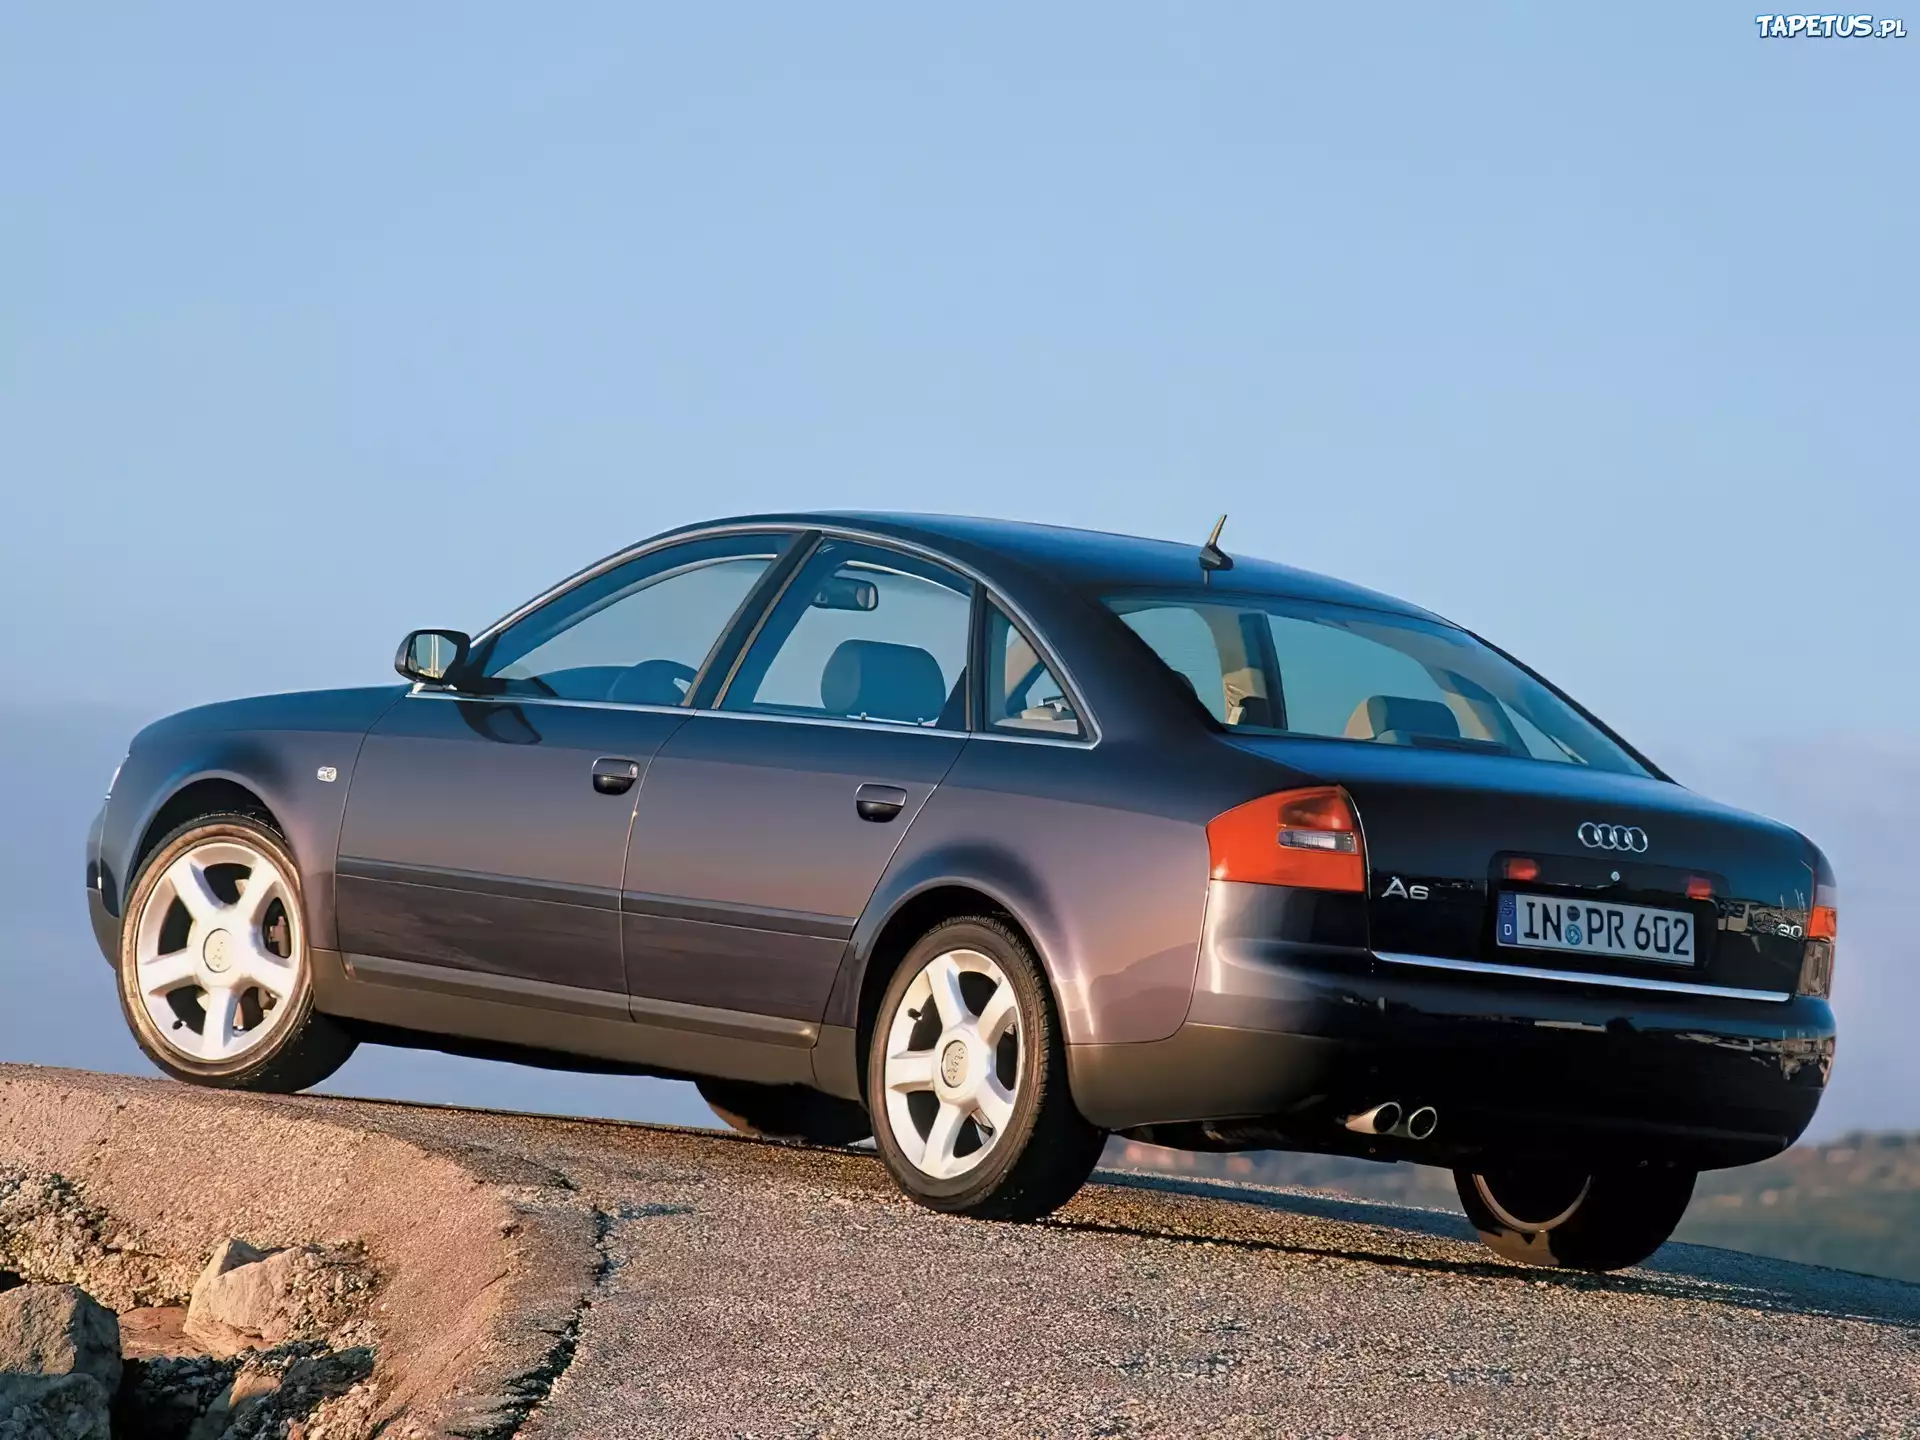 Ауди а6 с5 2001 год. Ауди а6 седан 2001. Audi a6 c5 2002. Audi a6 c5 2001. Ауди а6 с5 1997.